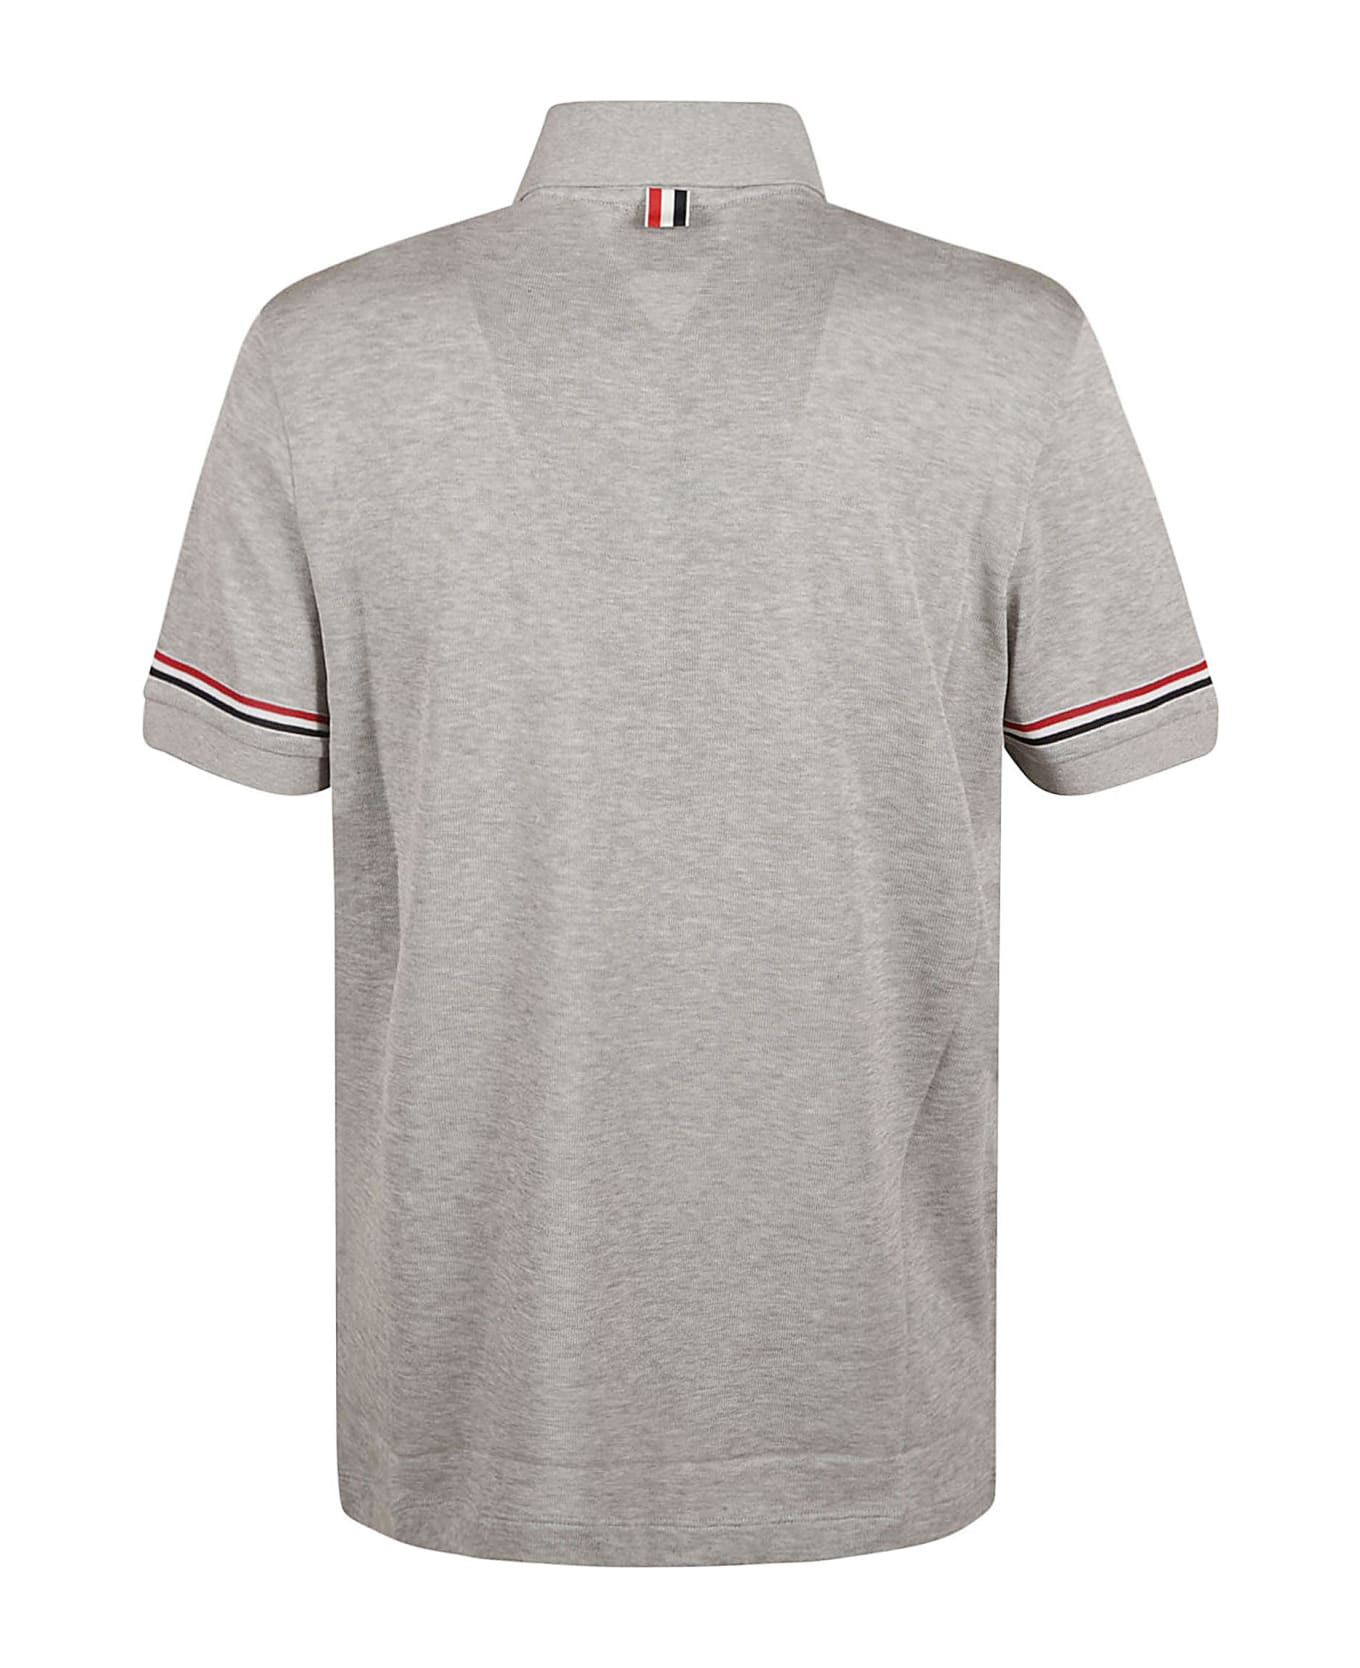 Thom Browne Rwb Polo Shirt - Medium Grey